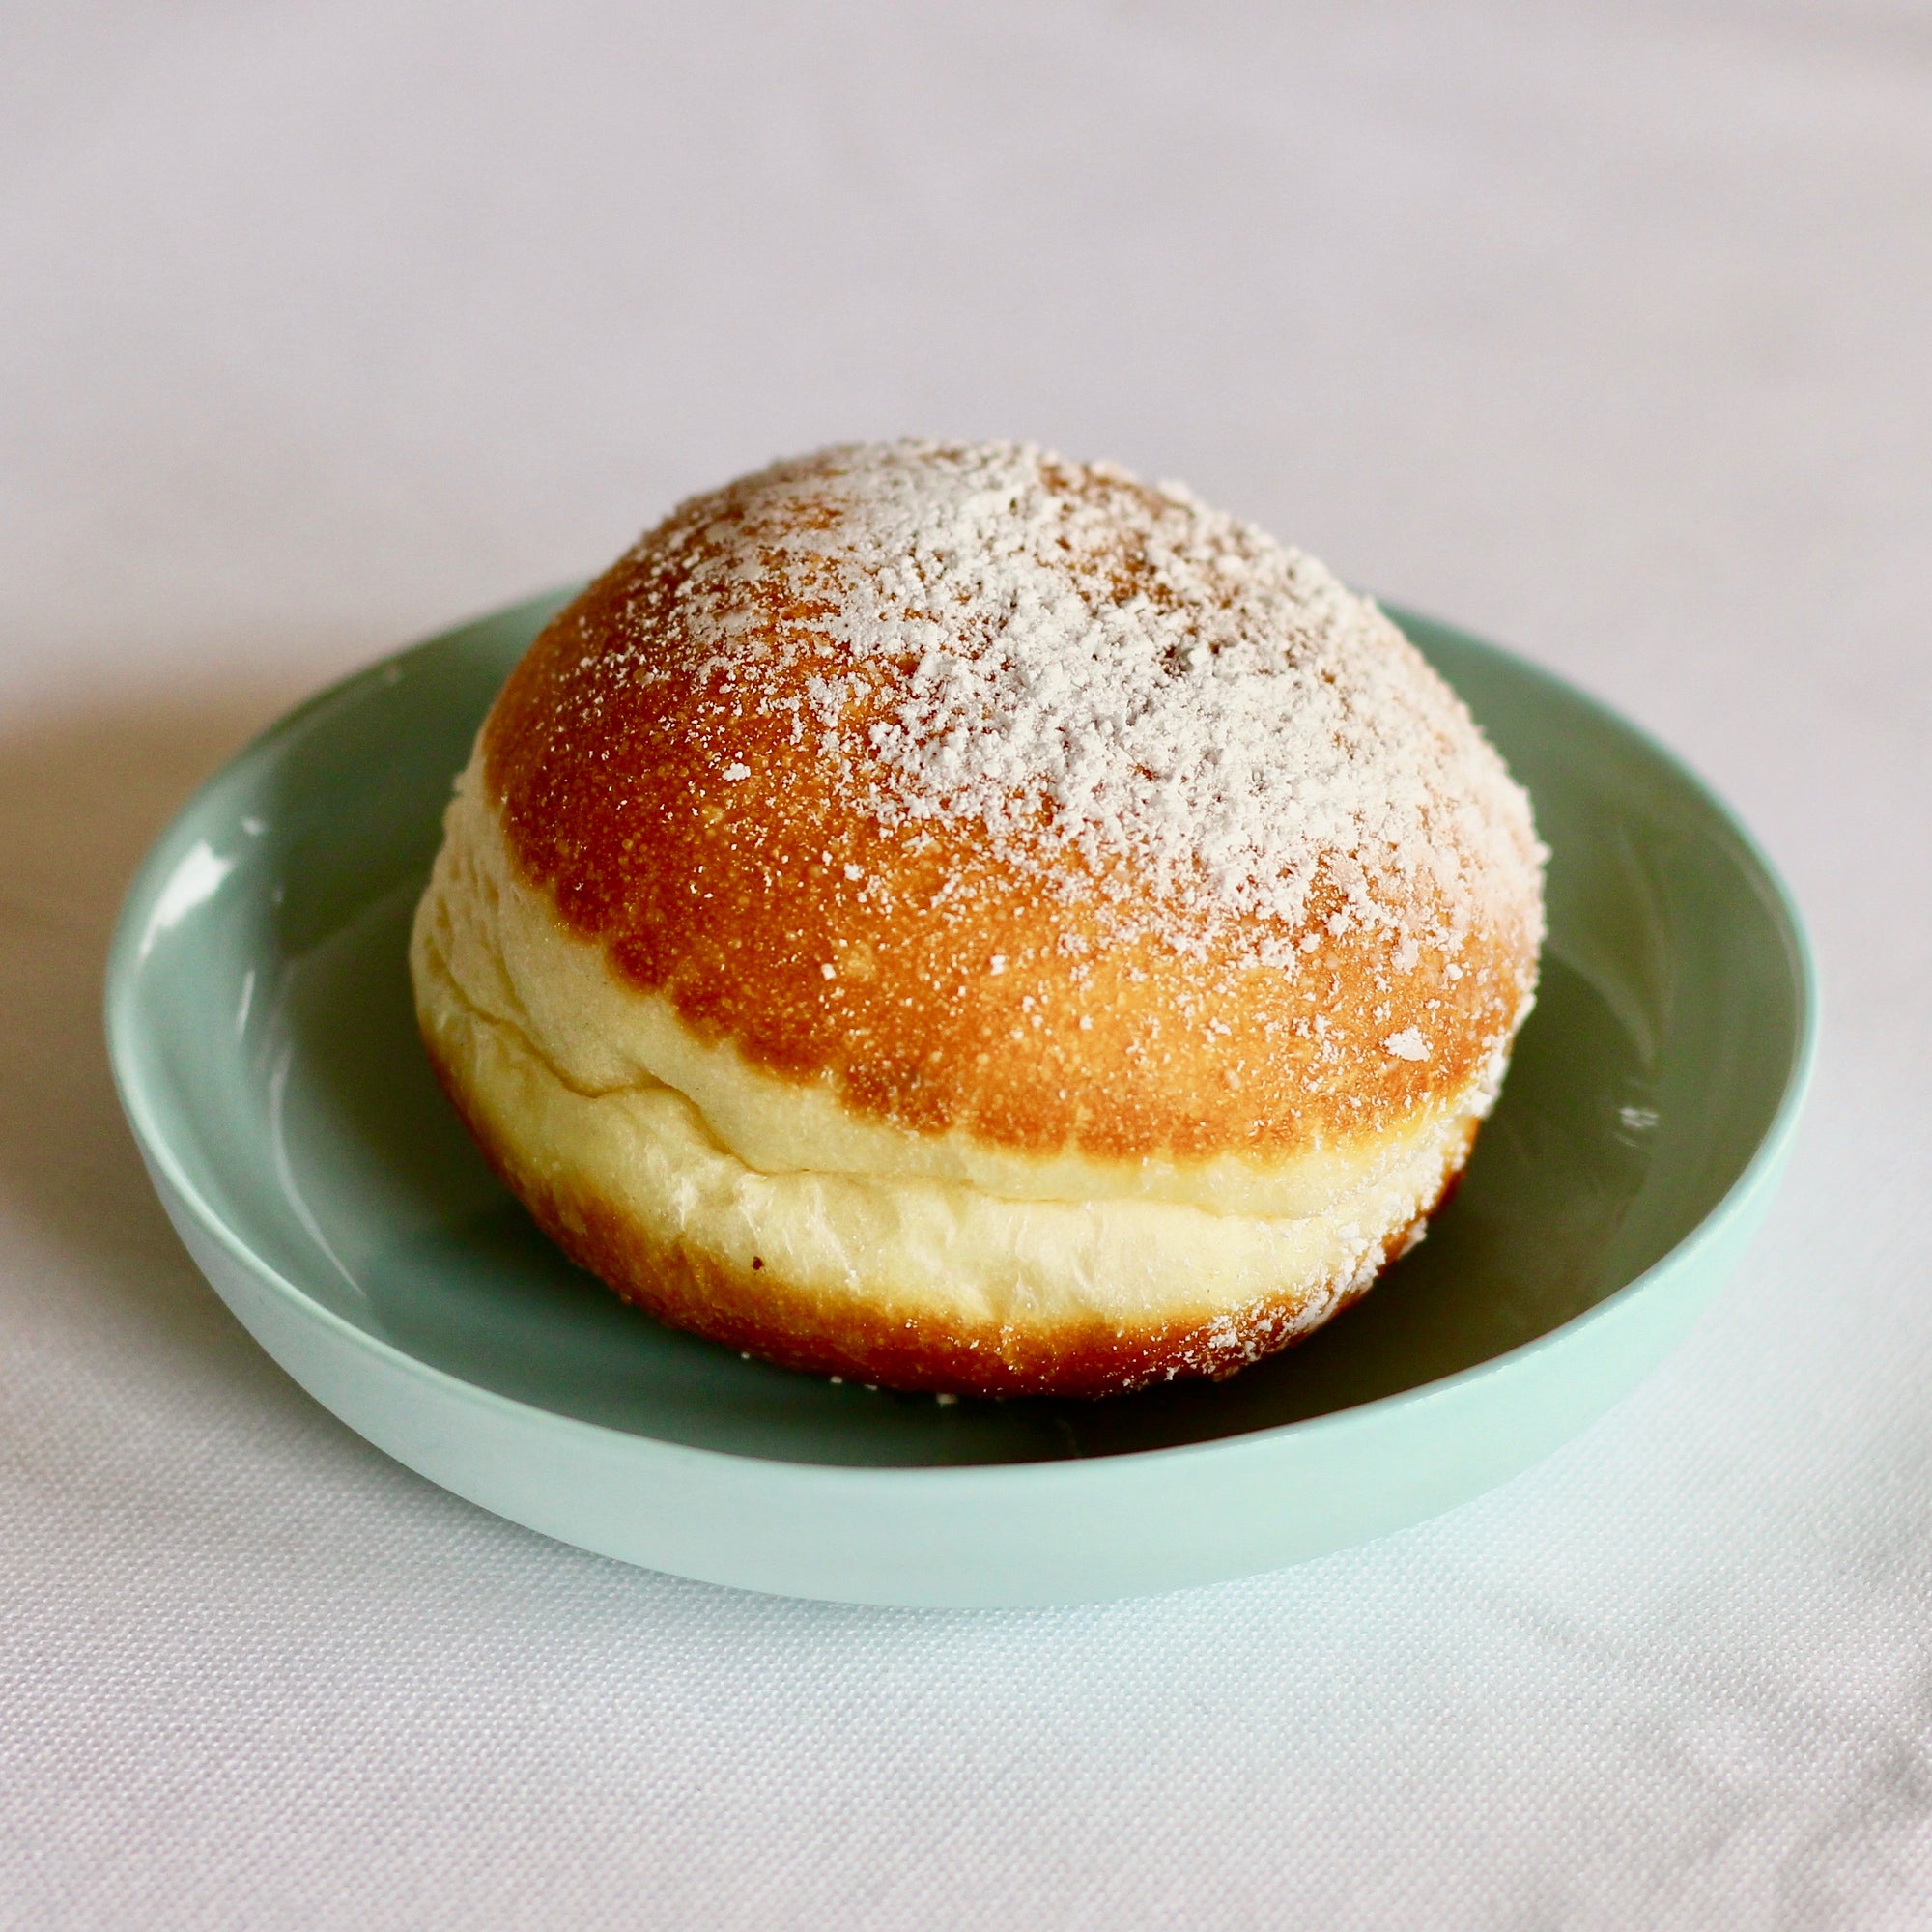 Glick's Mini Jam Donut